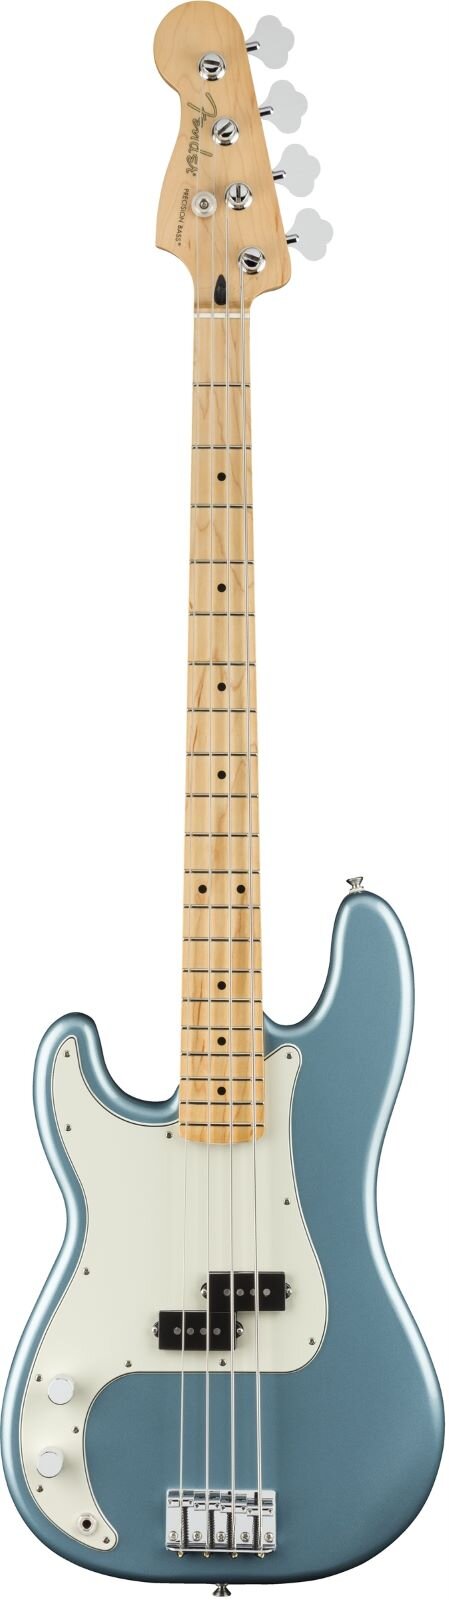 Fender Player Precision Bass Linkshänder Ahorngriffbrett Tidepool : photo 1